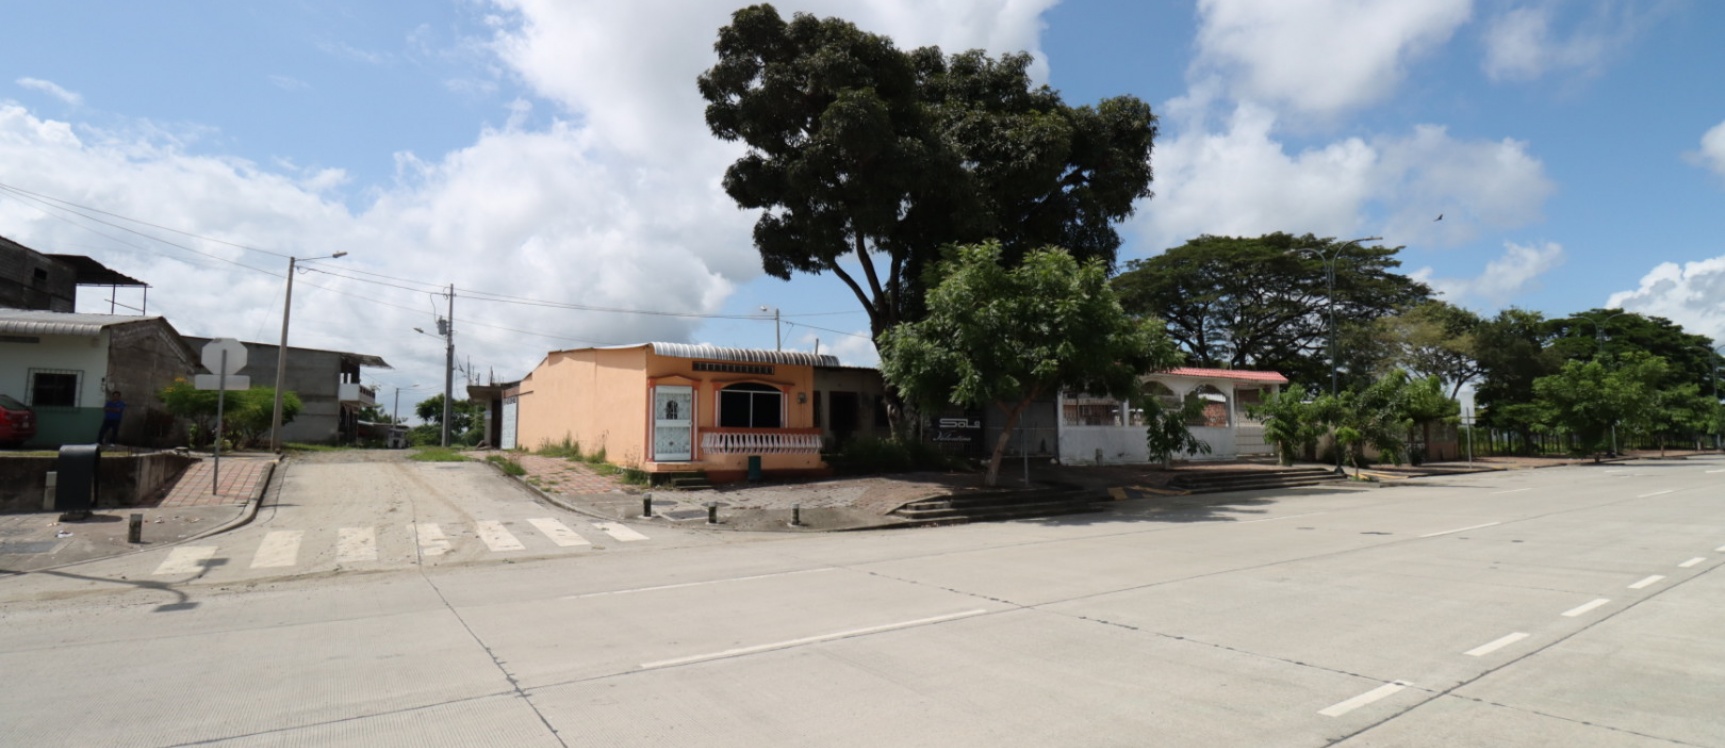 GeoBienes - Terreno en venta de uso residencial ubicado en Vía Daule - Plusvalia Guayaquil Casas de venta y alquiler Inmobiliaria Ecuador